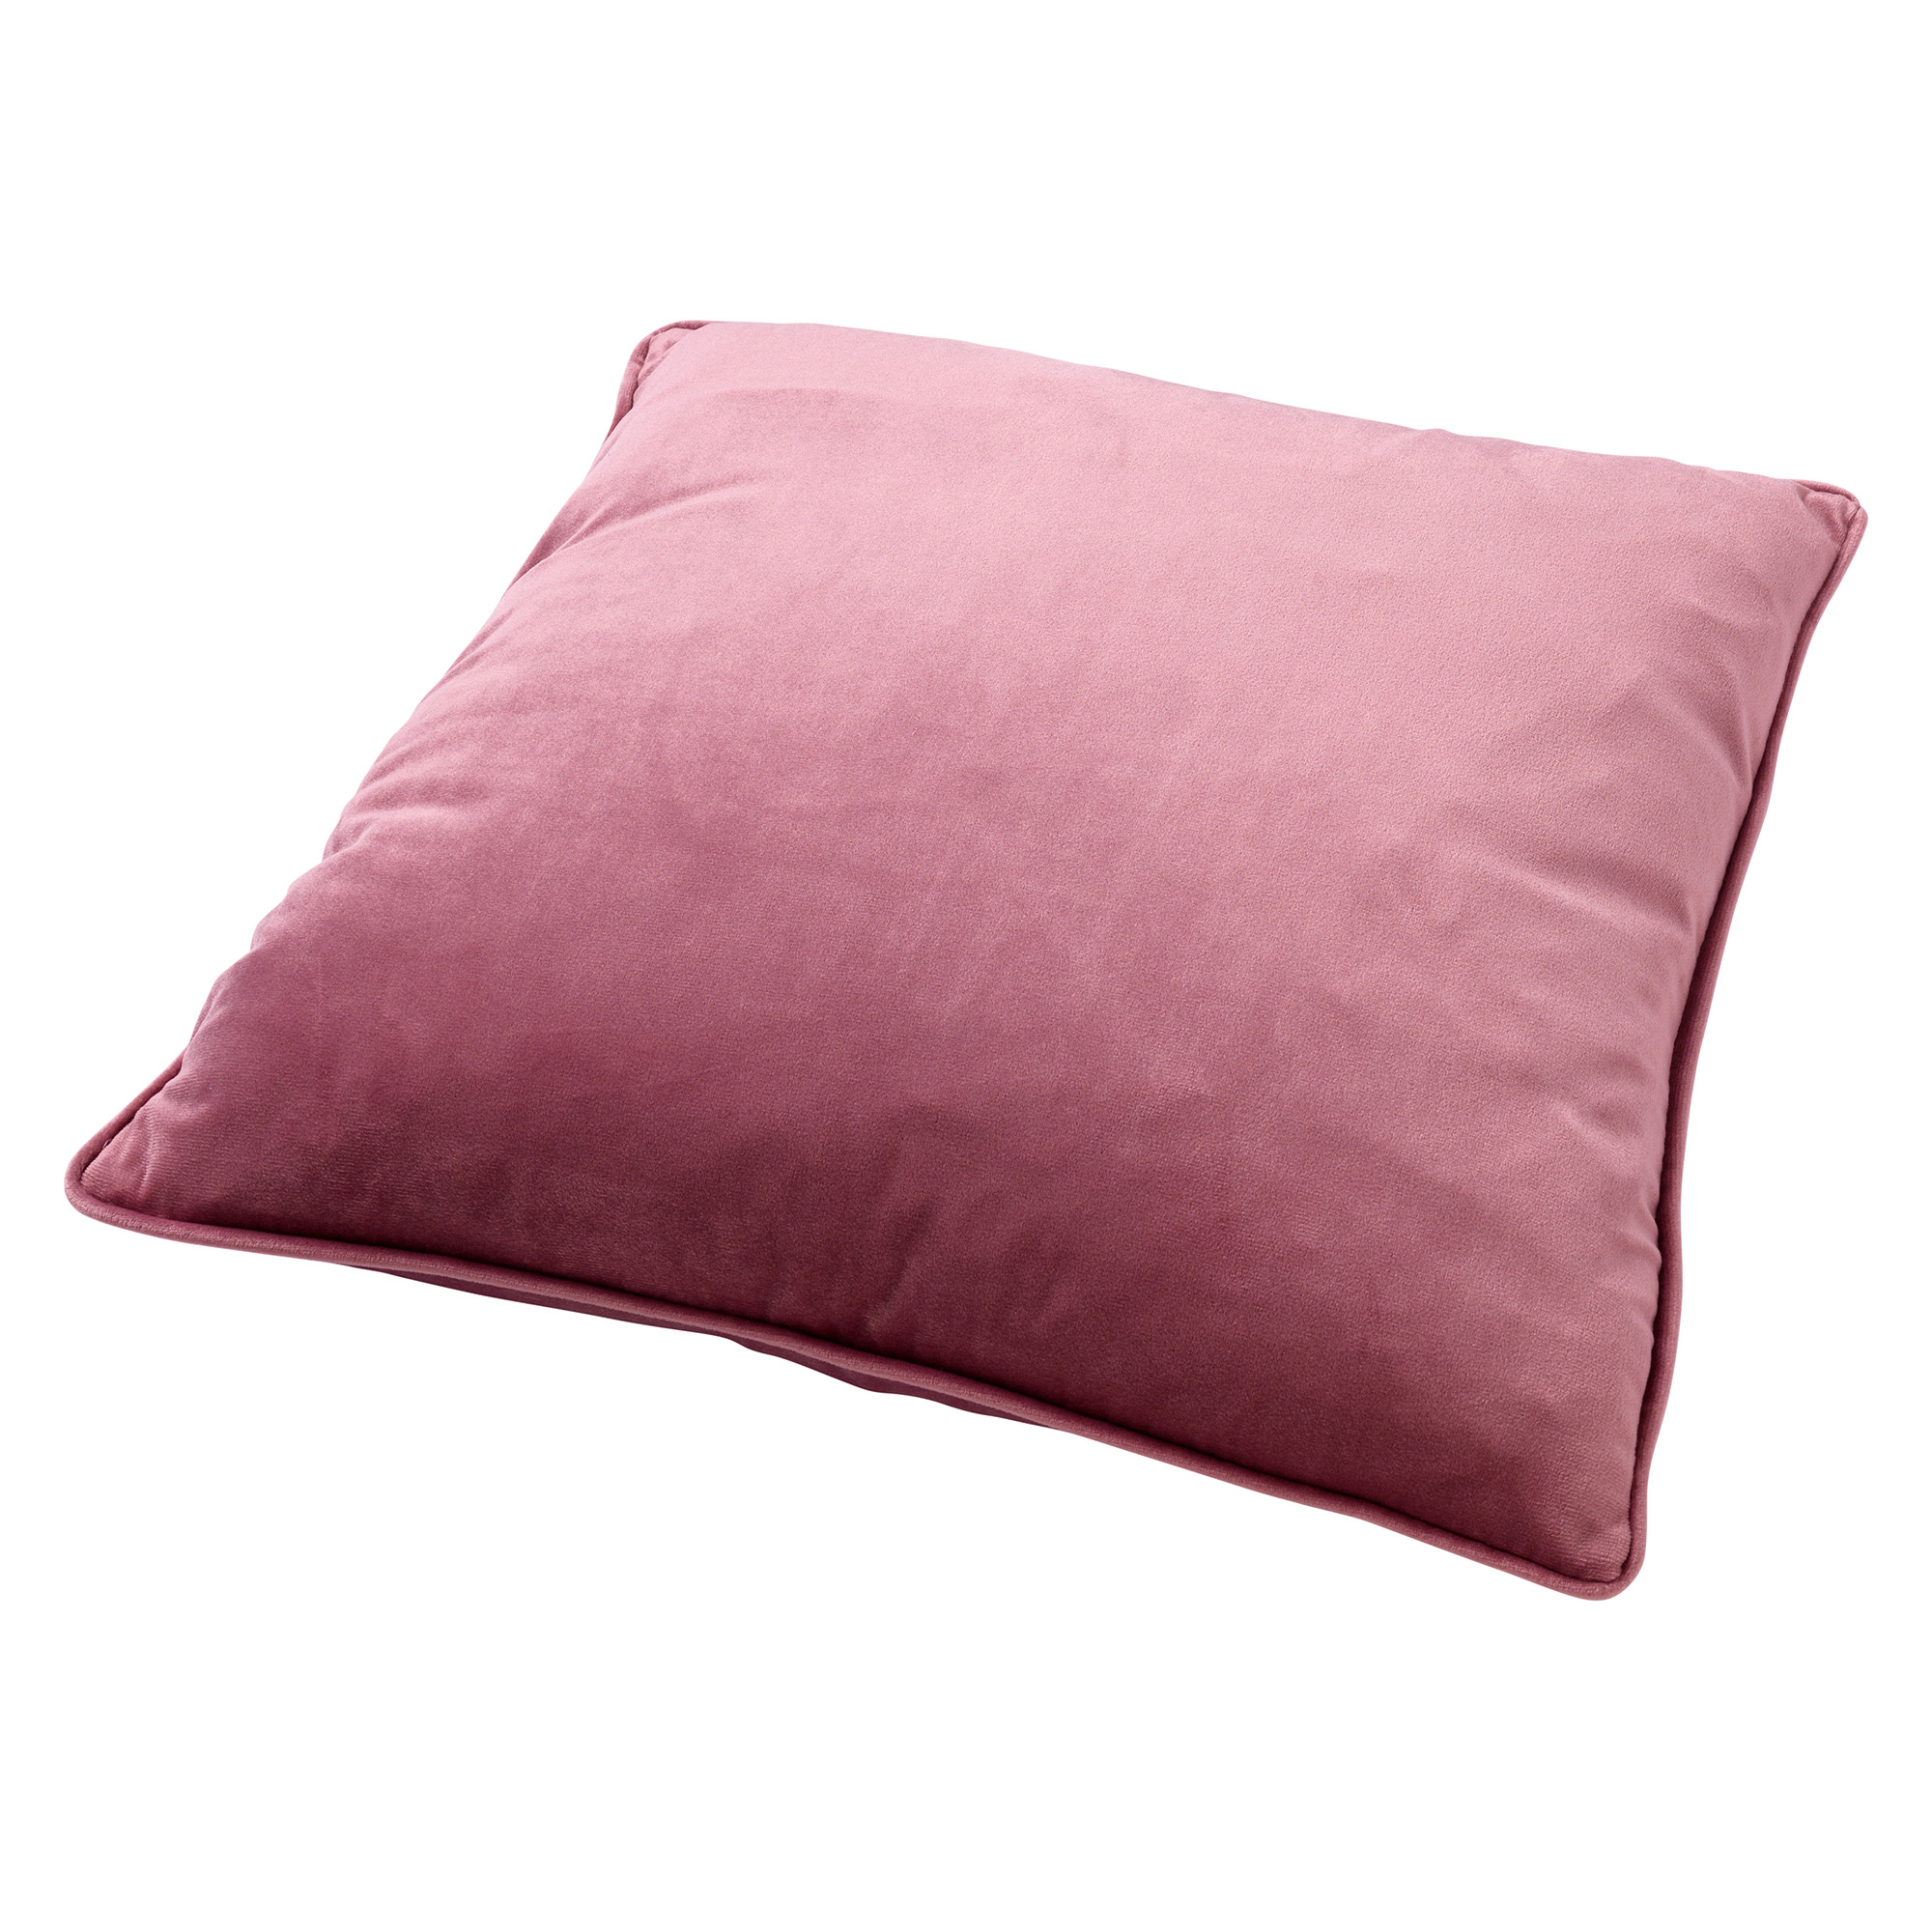 FINN - Sierkussen 45x45 cm - velvet - effen kleur - Heather Rose - roze